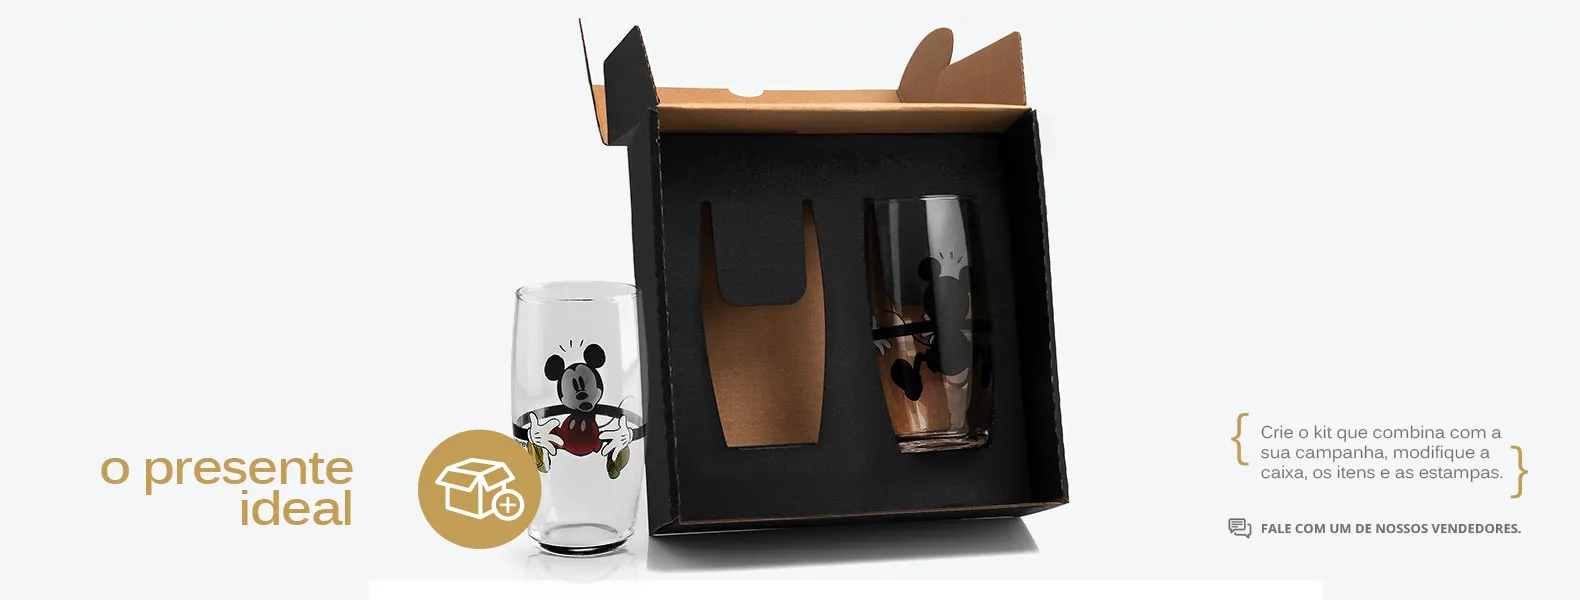 Jogo de copos personalizados contendo dois copos Mickey em vidro e embalagem.